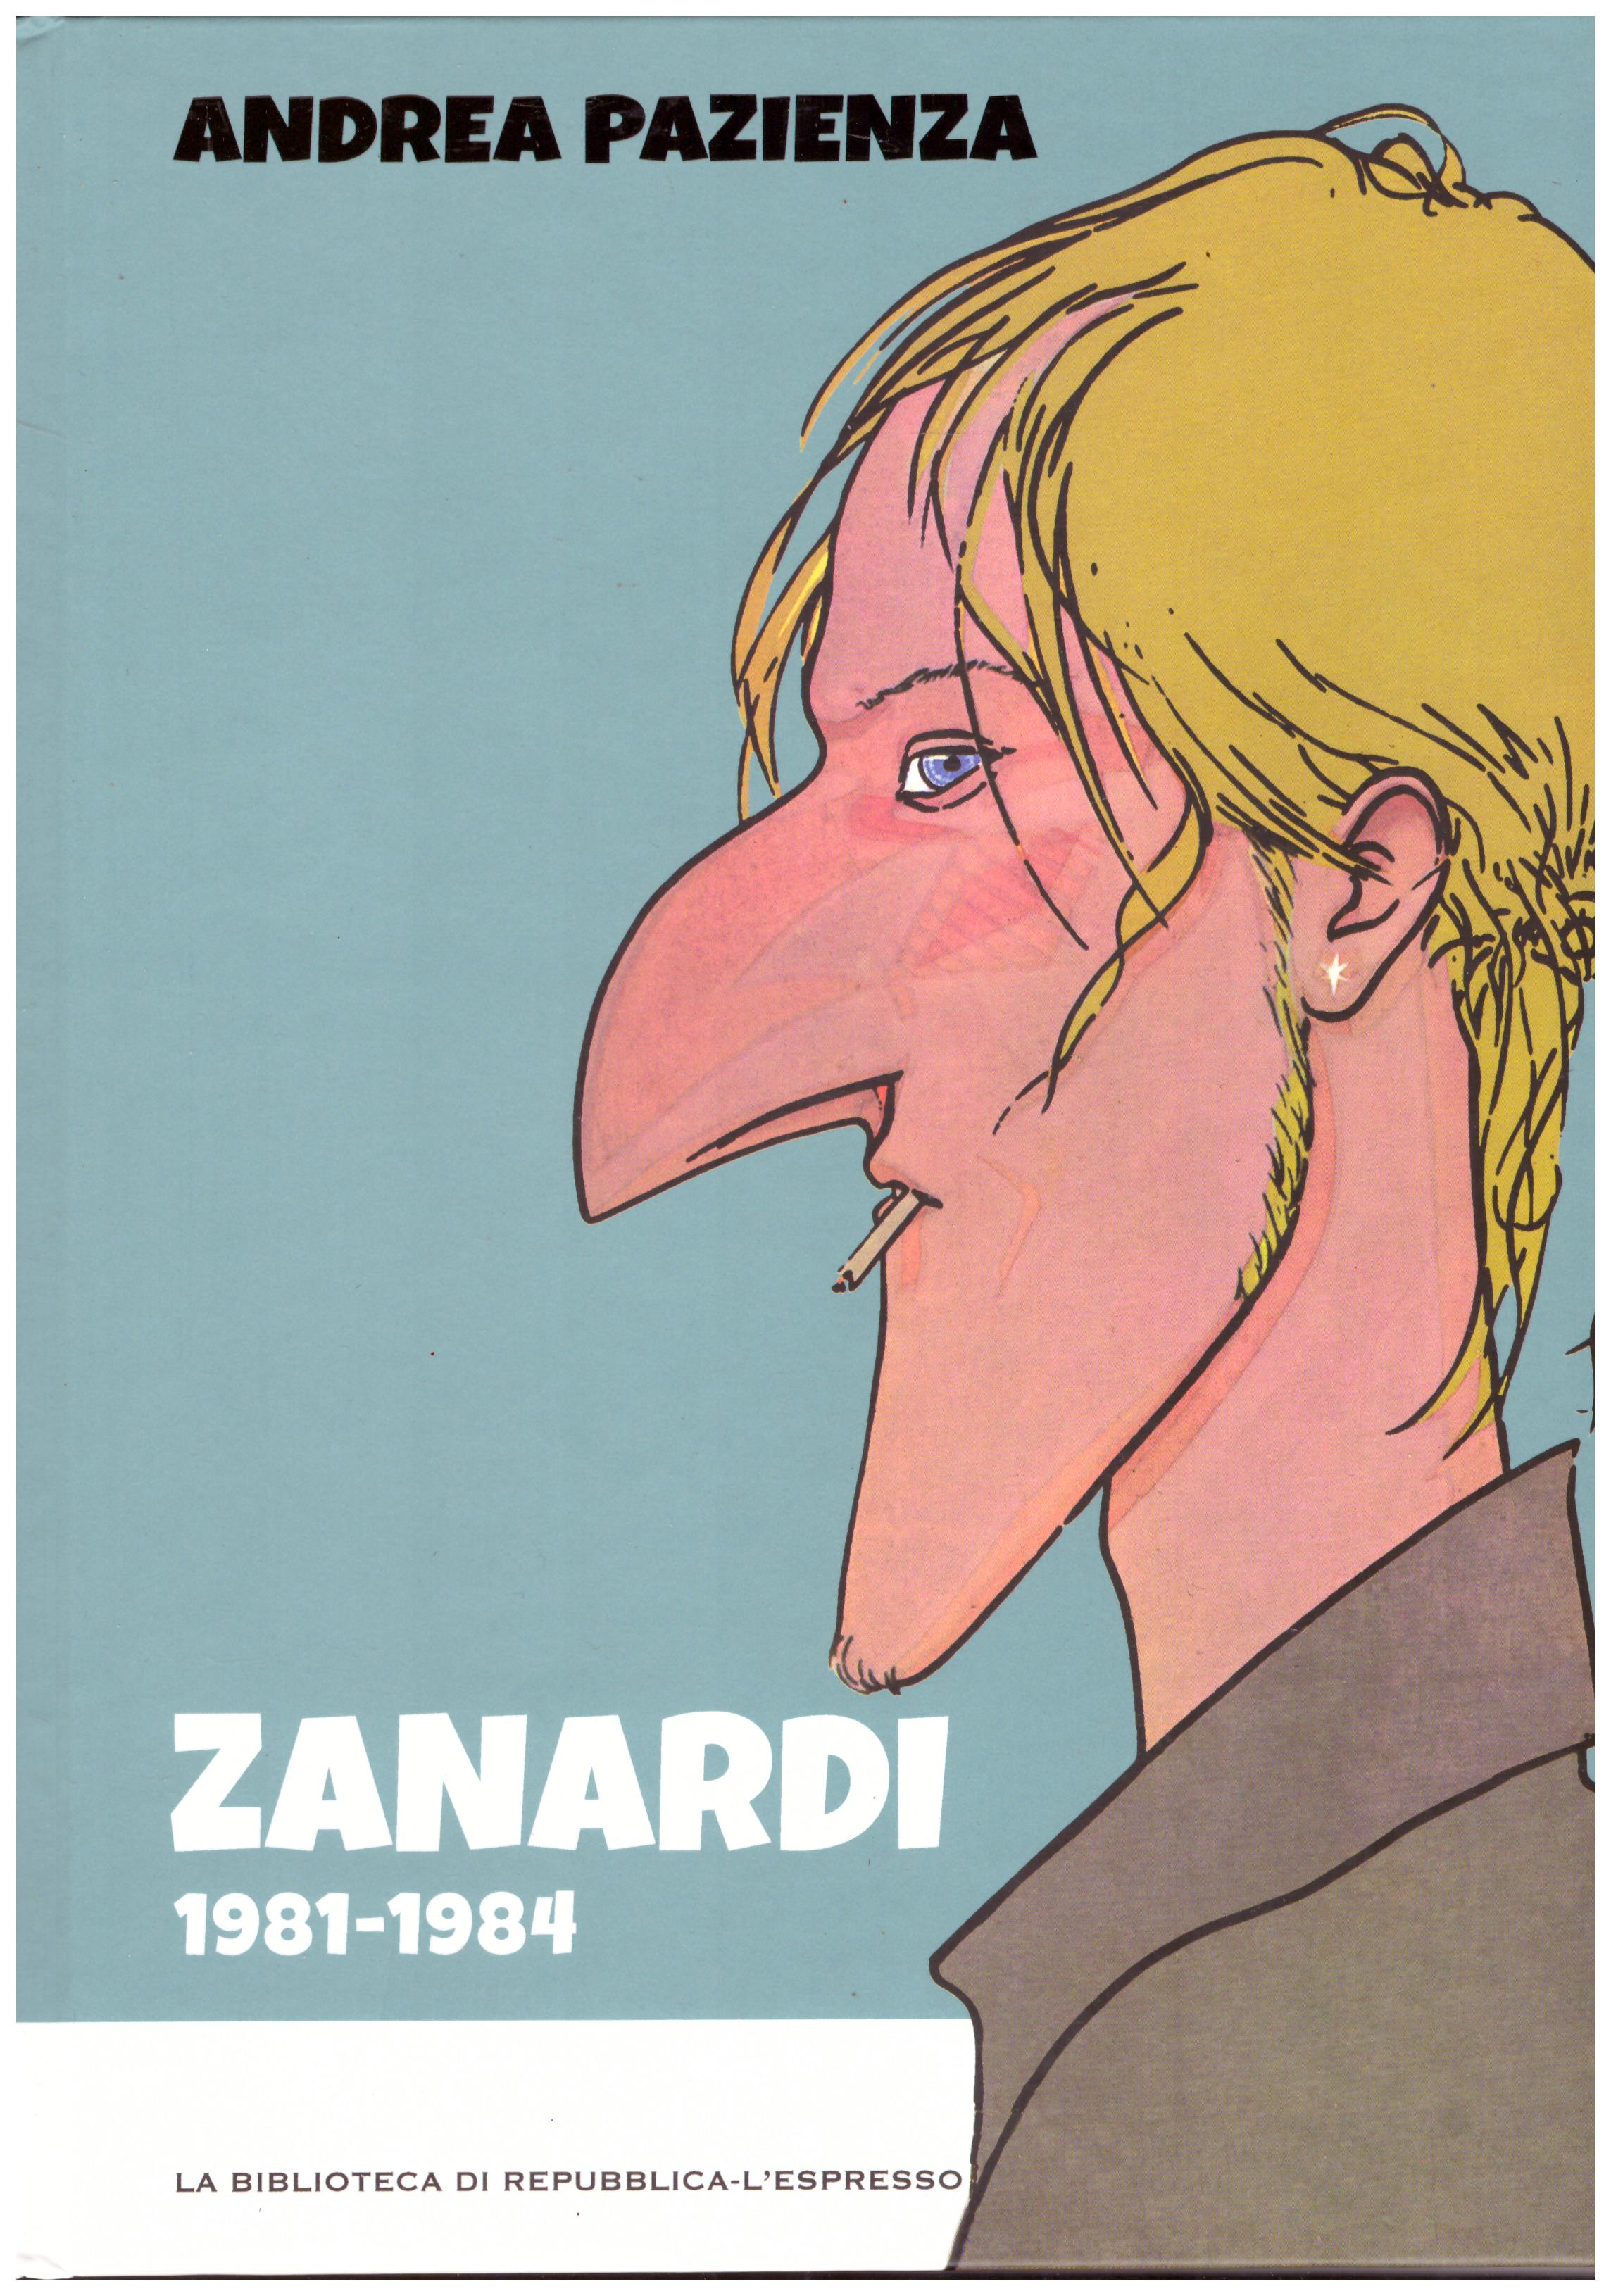 Titolo: Zanardi 1981-1984 Autore: Andrea Pazienza  Editore: biblioteca di repubblica-l'espresso, 2016